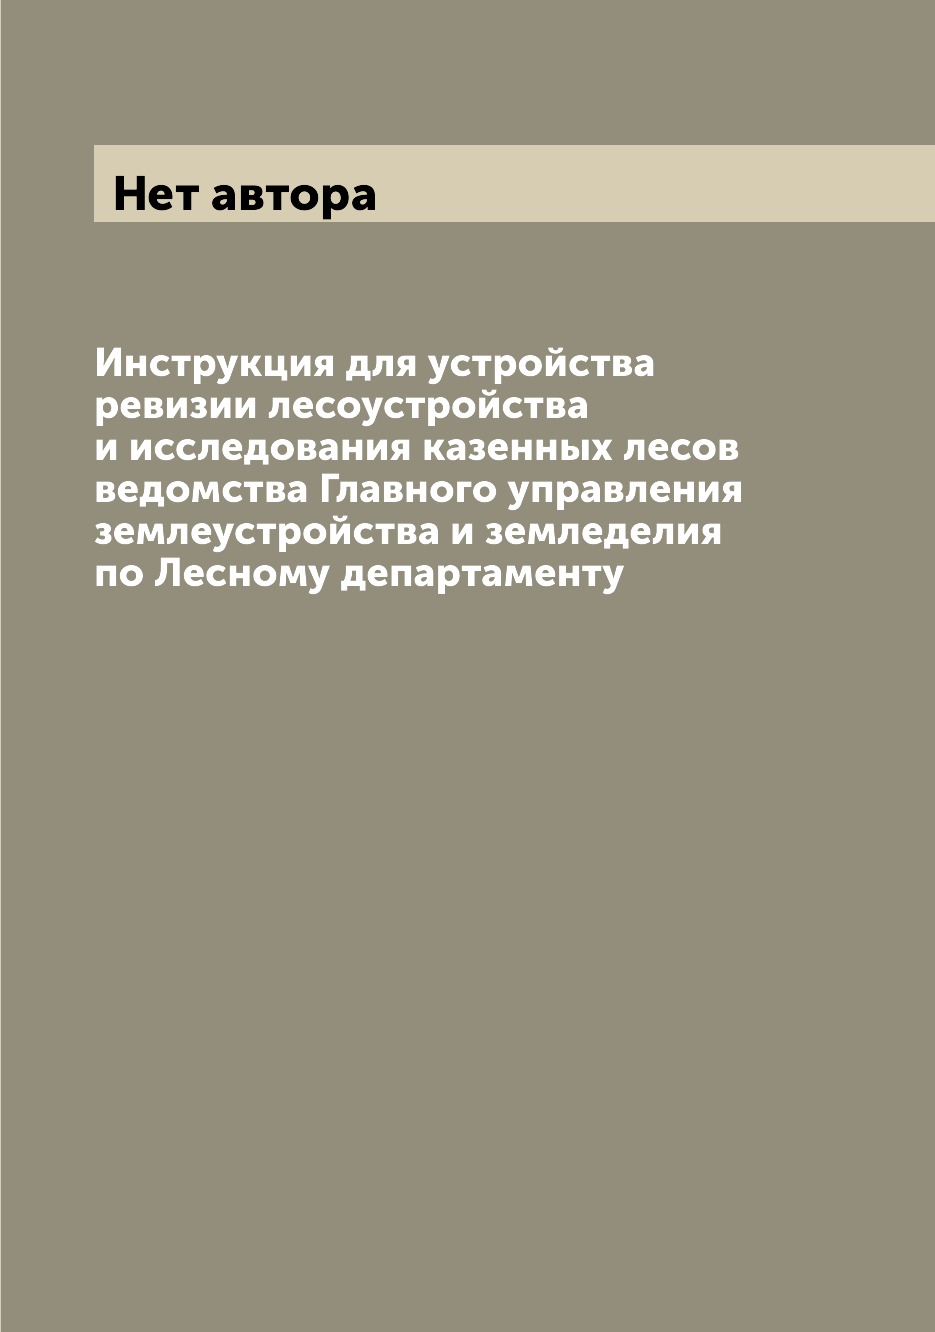 фото Книга инструкция для устройства ревизии лесоустройства и исследования казенных лесов ве... archive publica